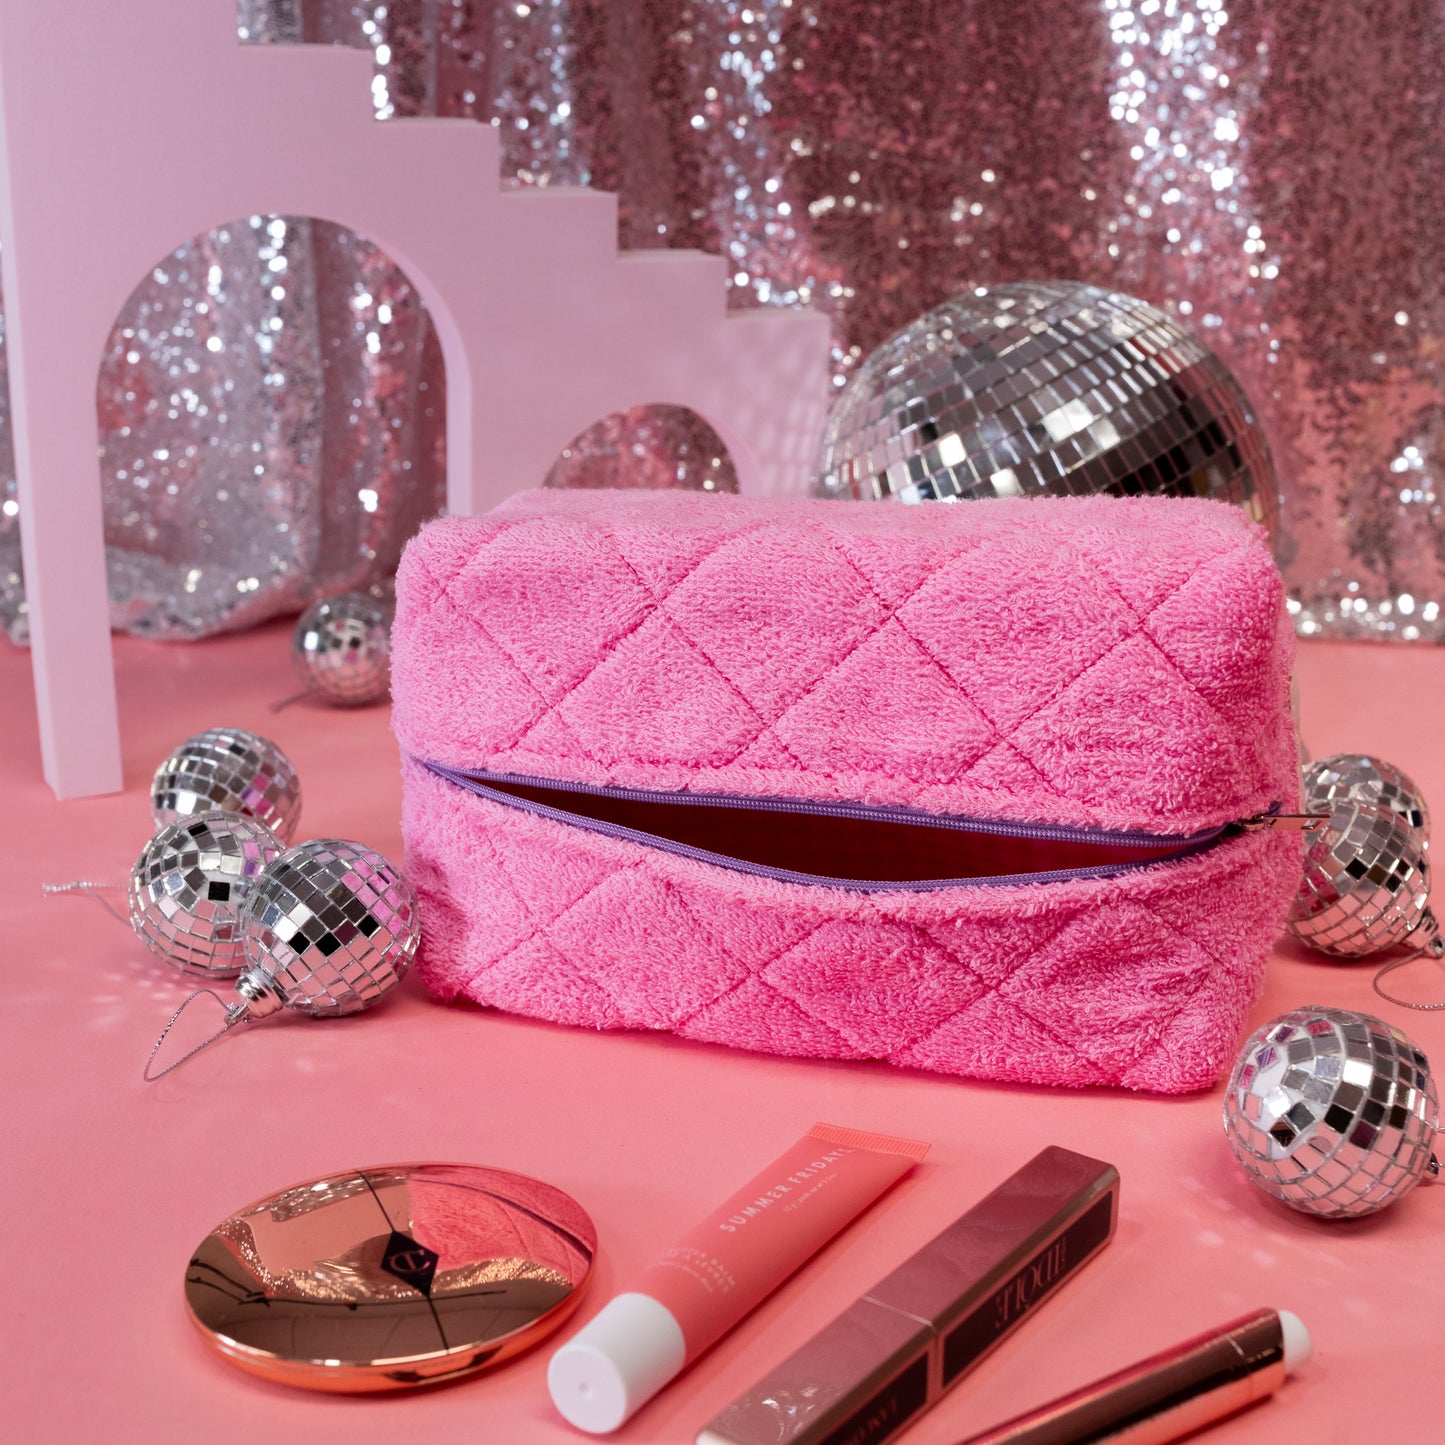 pink makeup bag with makeup and disco balls